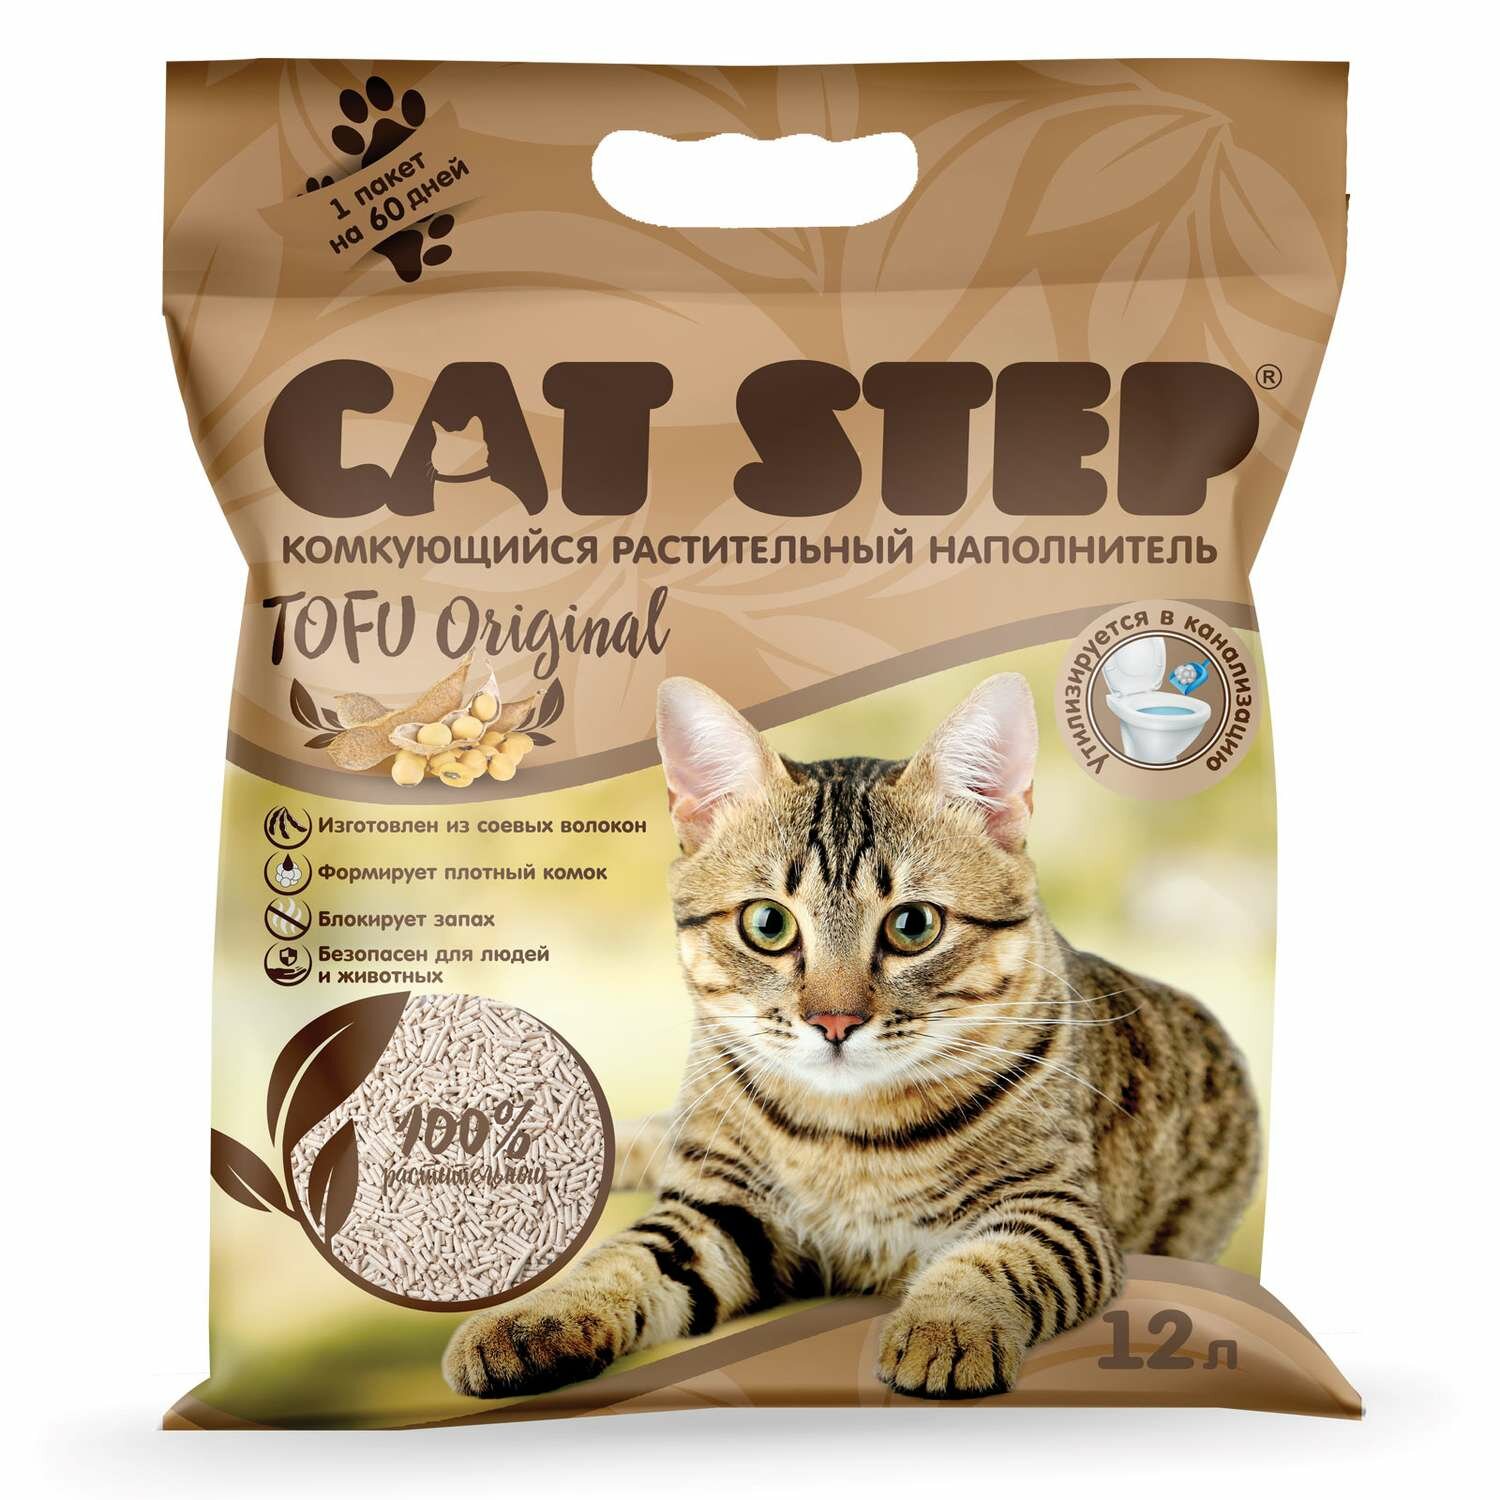 Комкующийся наполнитель Cat Step Tofu Original, 12л, 1 шт.